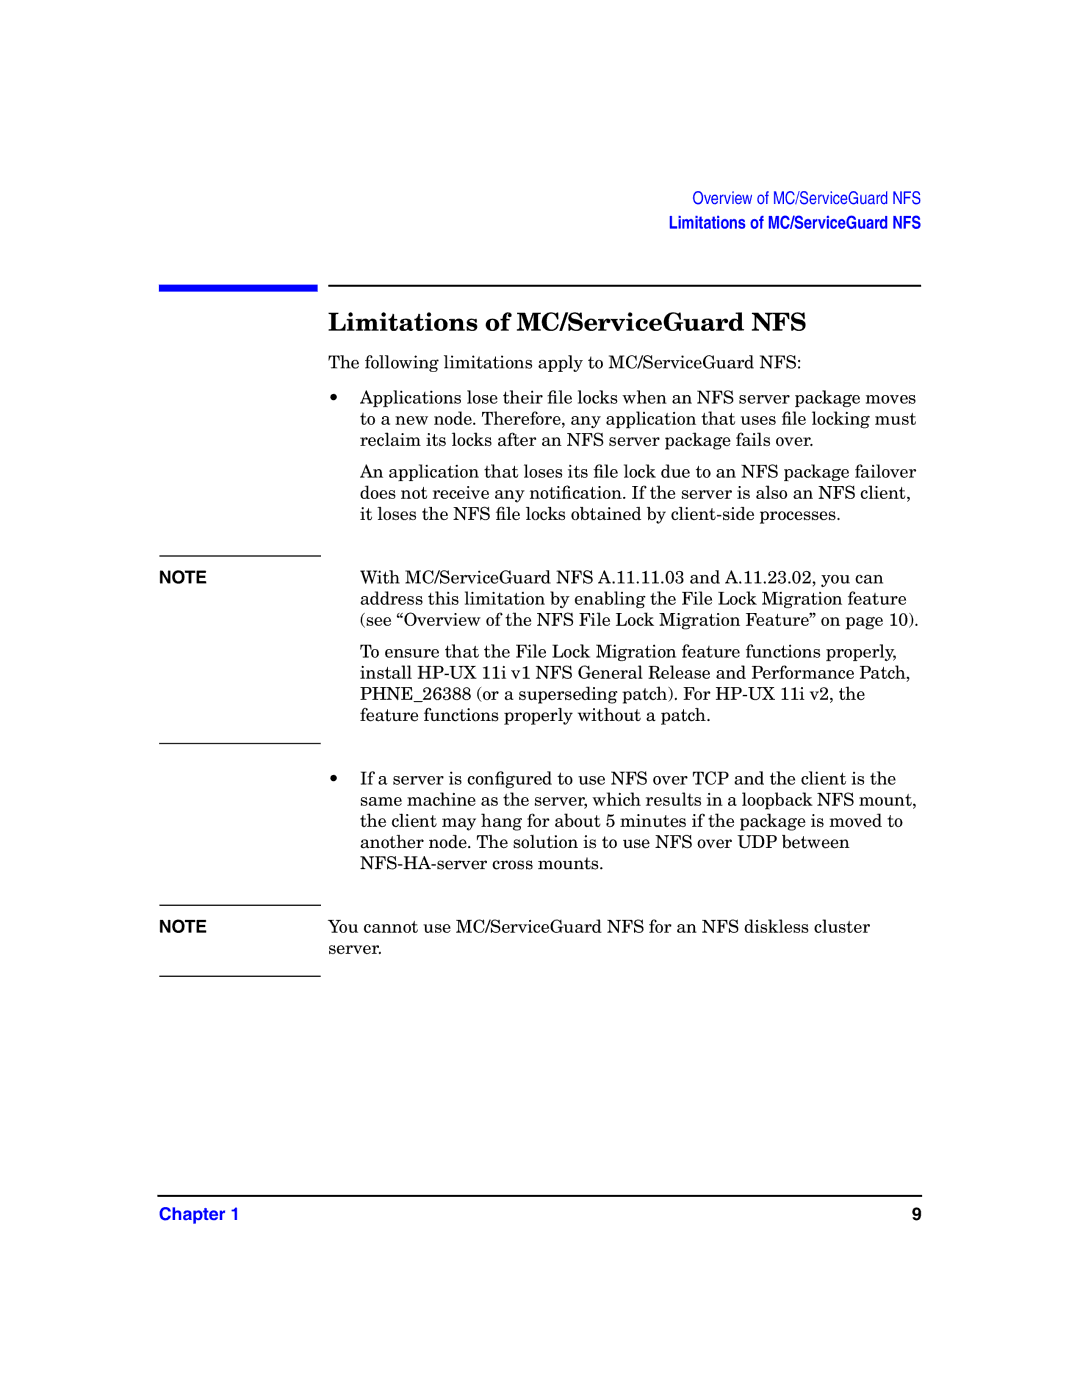 HP Serviceguard Toolkit for NFS manual Limitations of MC/ServiceGuard NFS 